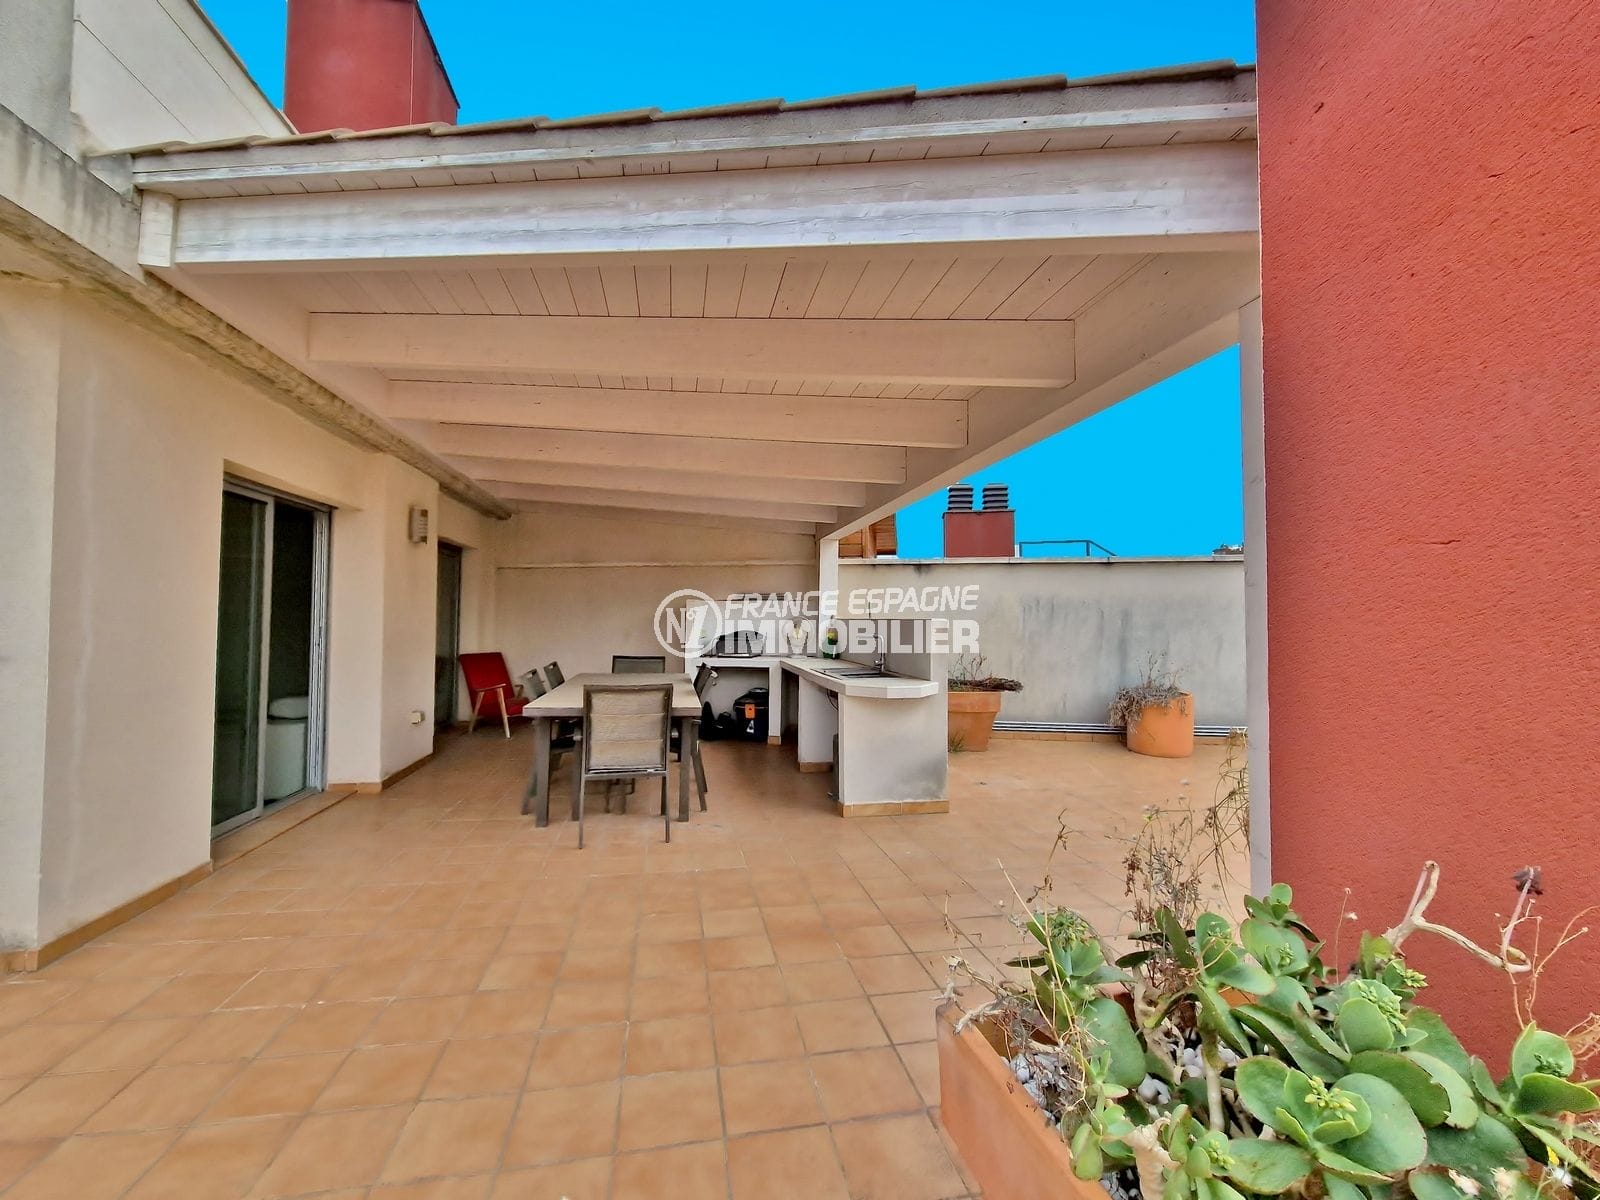 Figueres - atico terraza solarium 175 m², aparcamiento privado en sótano